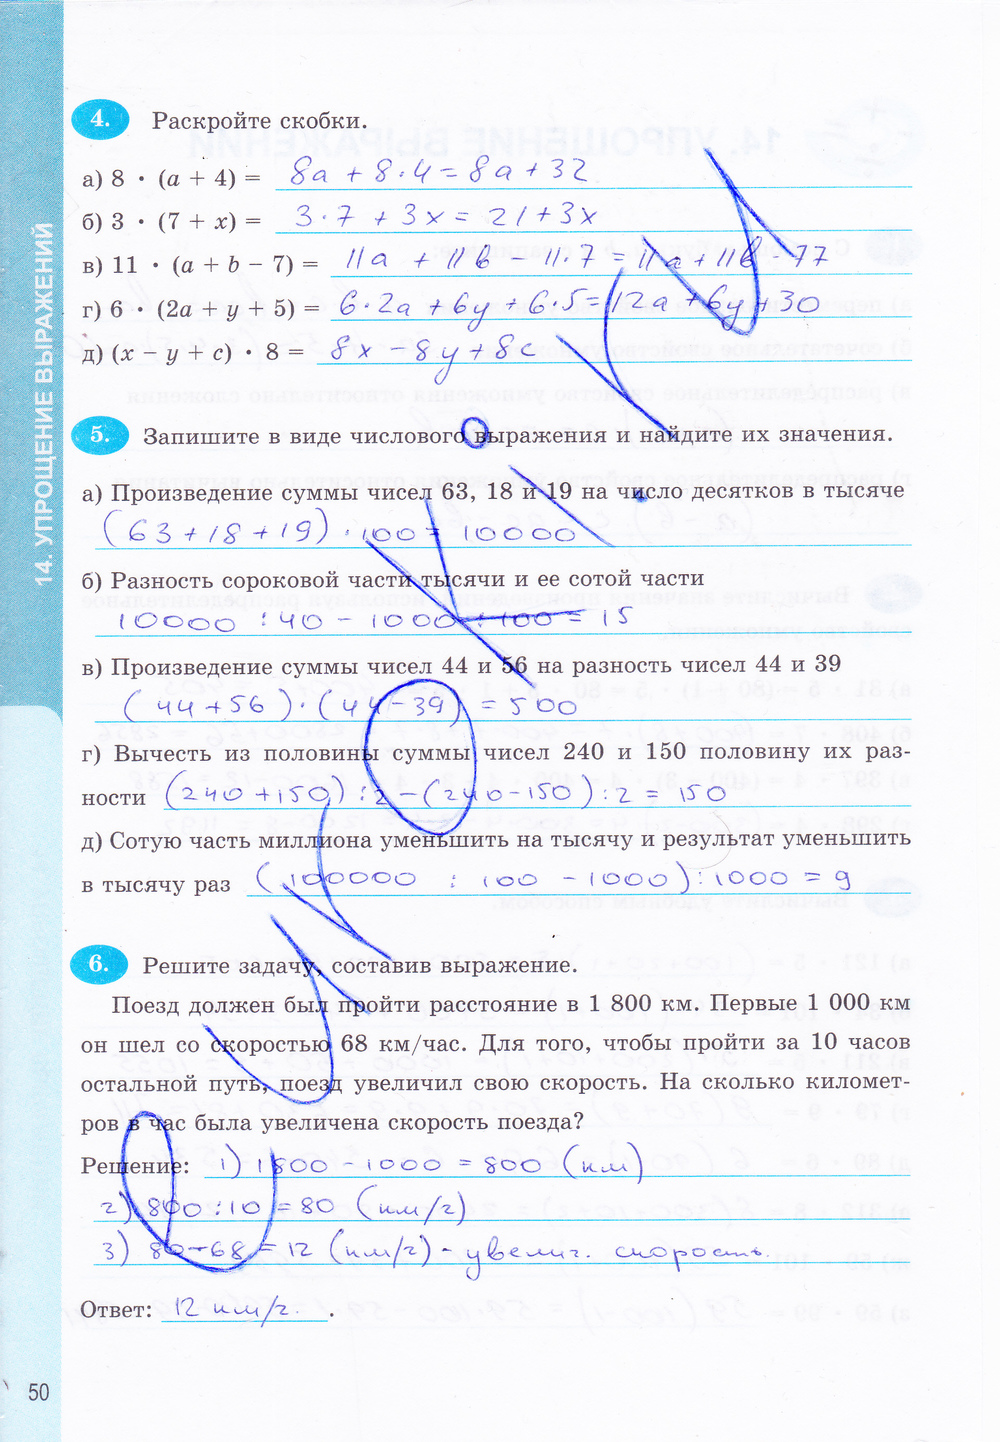 Домашнее задание по рабочей тетрадь по математике 6 класс автор т м ерина